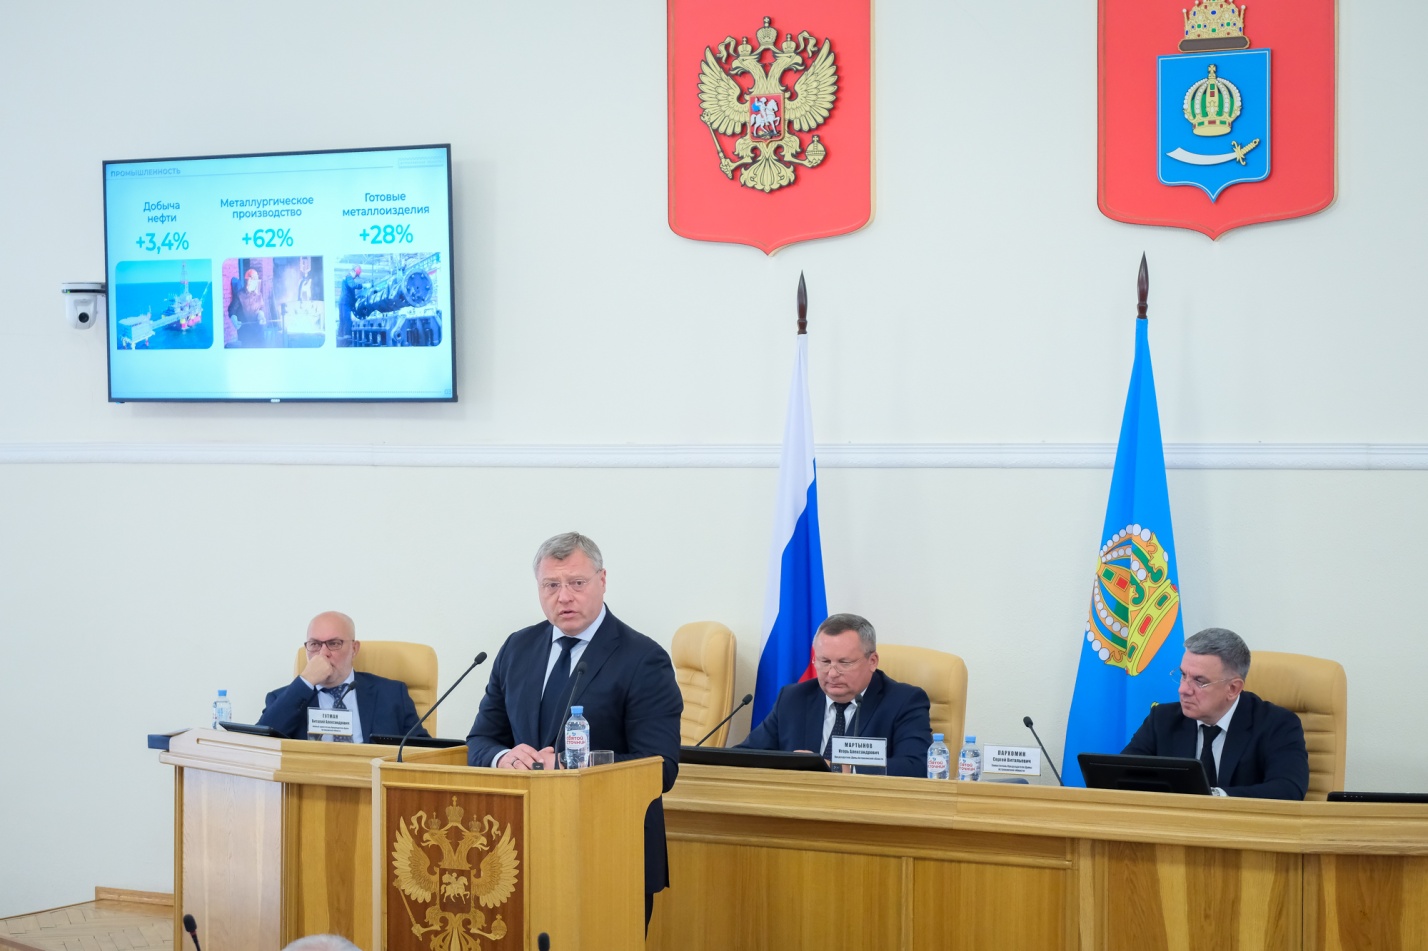  Игорь Бабушкин отчитался перед депутатами о работе правительства Астраханской области 